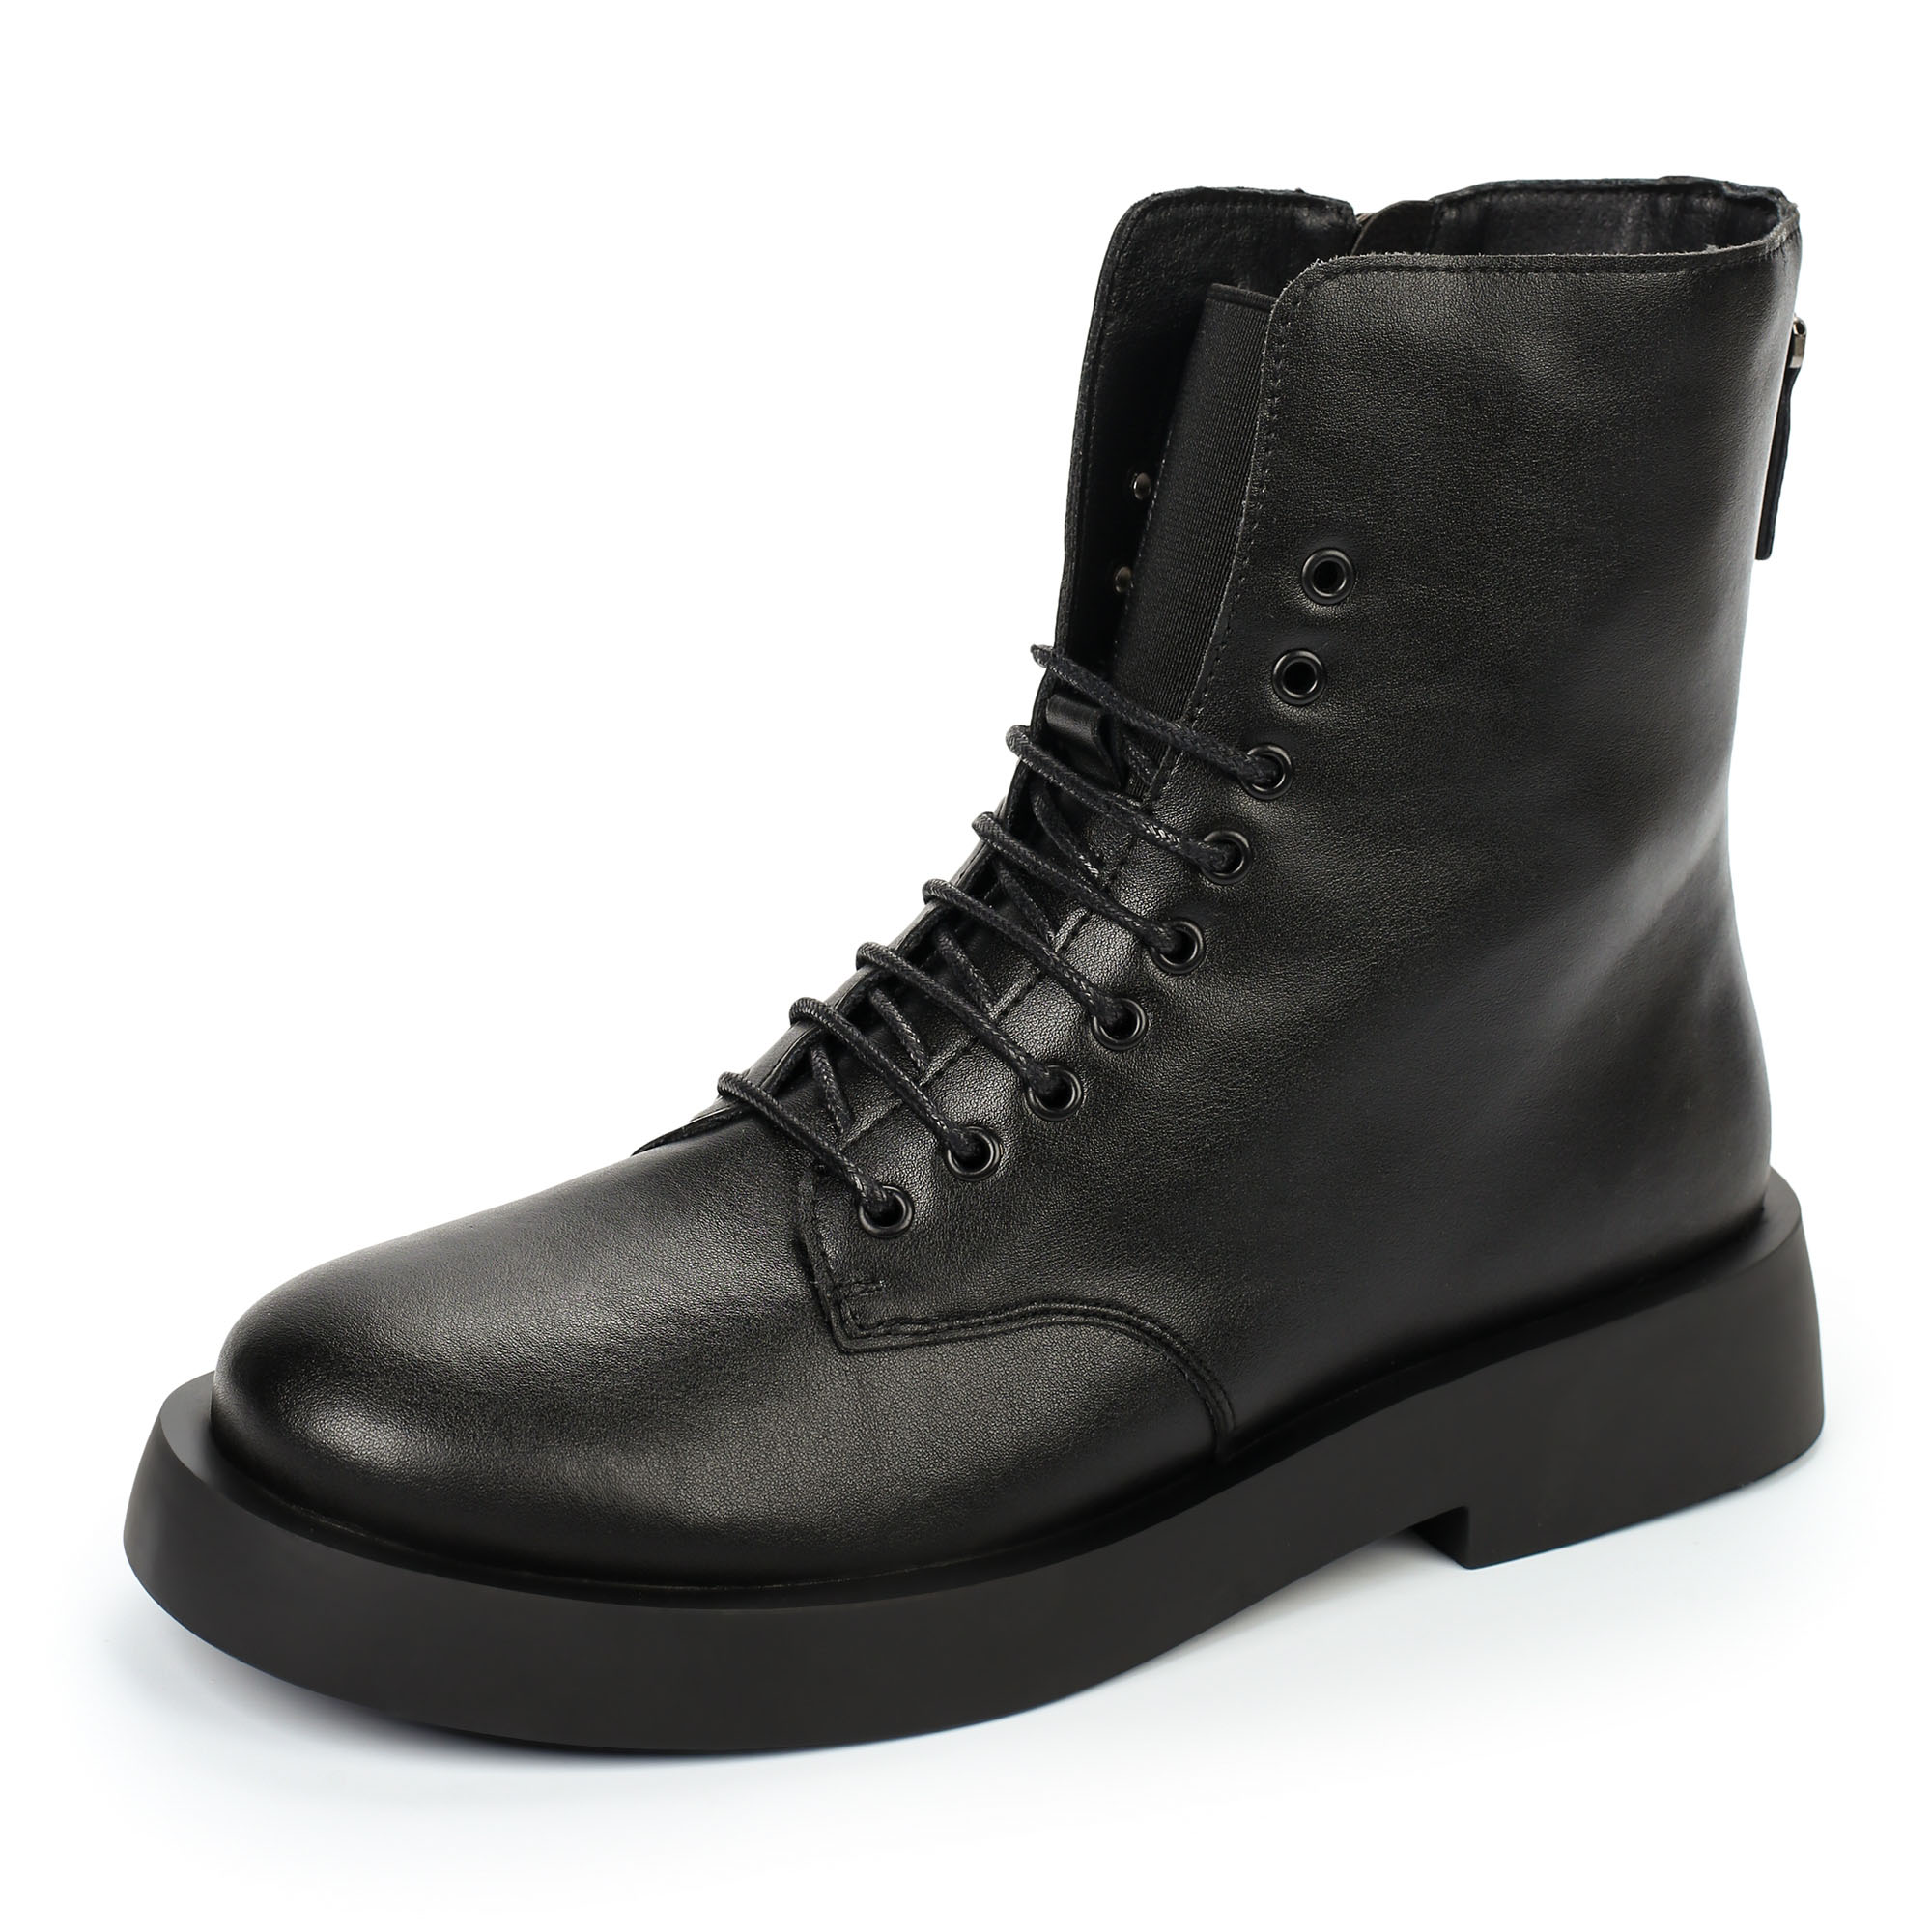 Ботинки Thomas Munz 025-740A-2602, цвет черный, размер 37 - фото 2